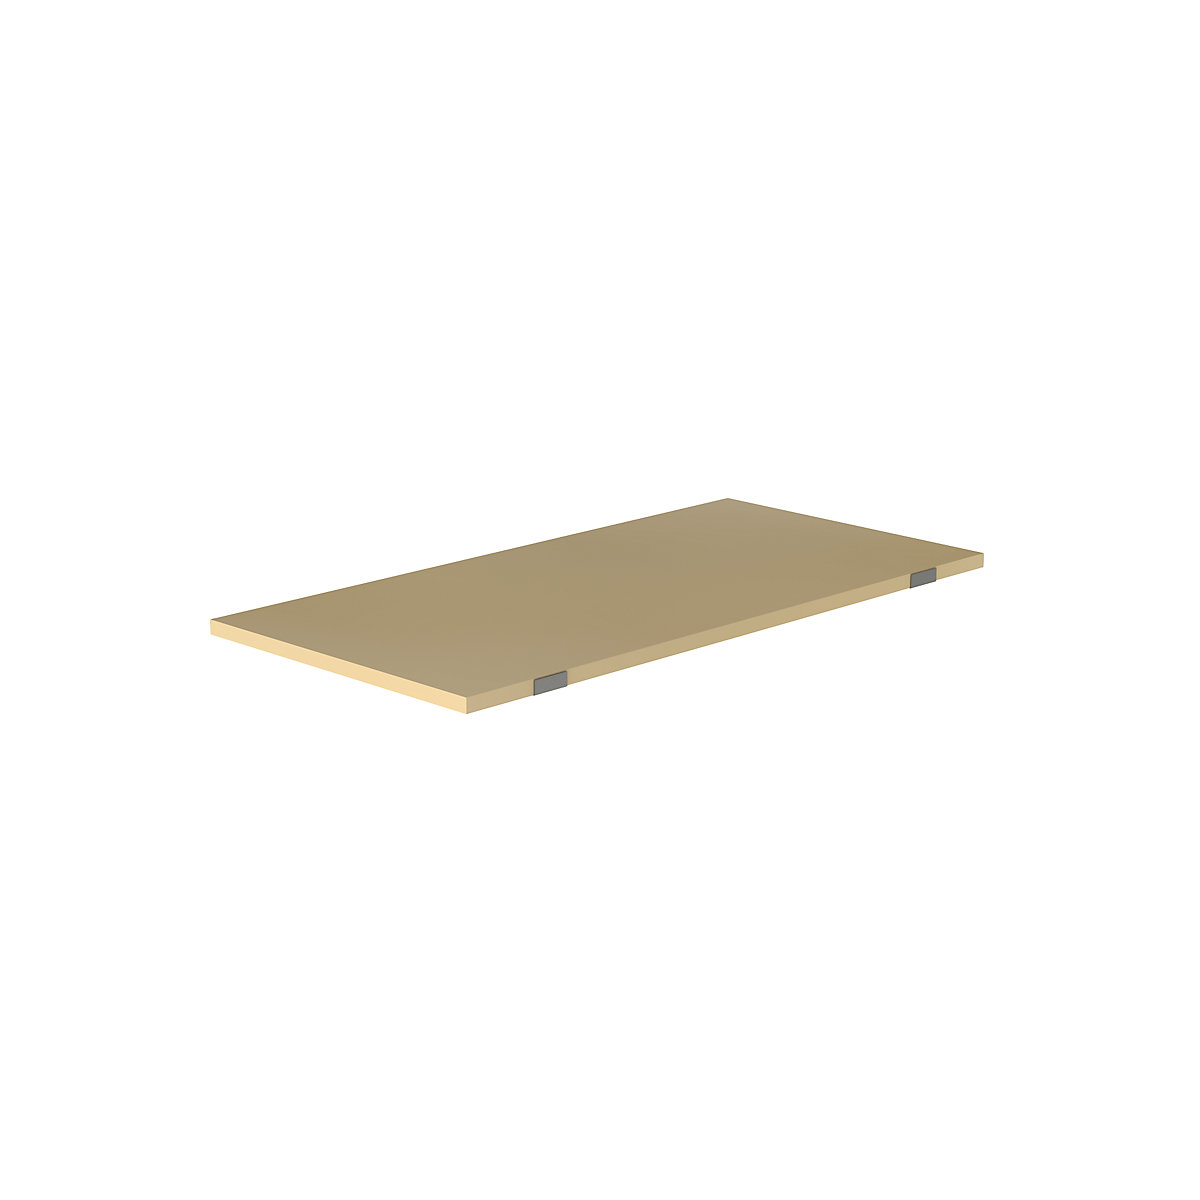 EUROKRAFTpro – Shelf for pallet shelf unit, moulded chipboard, for beam length 1825 mm, shelf unit depth 900 mm